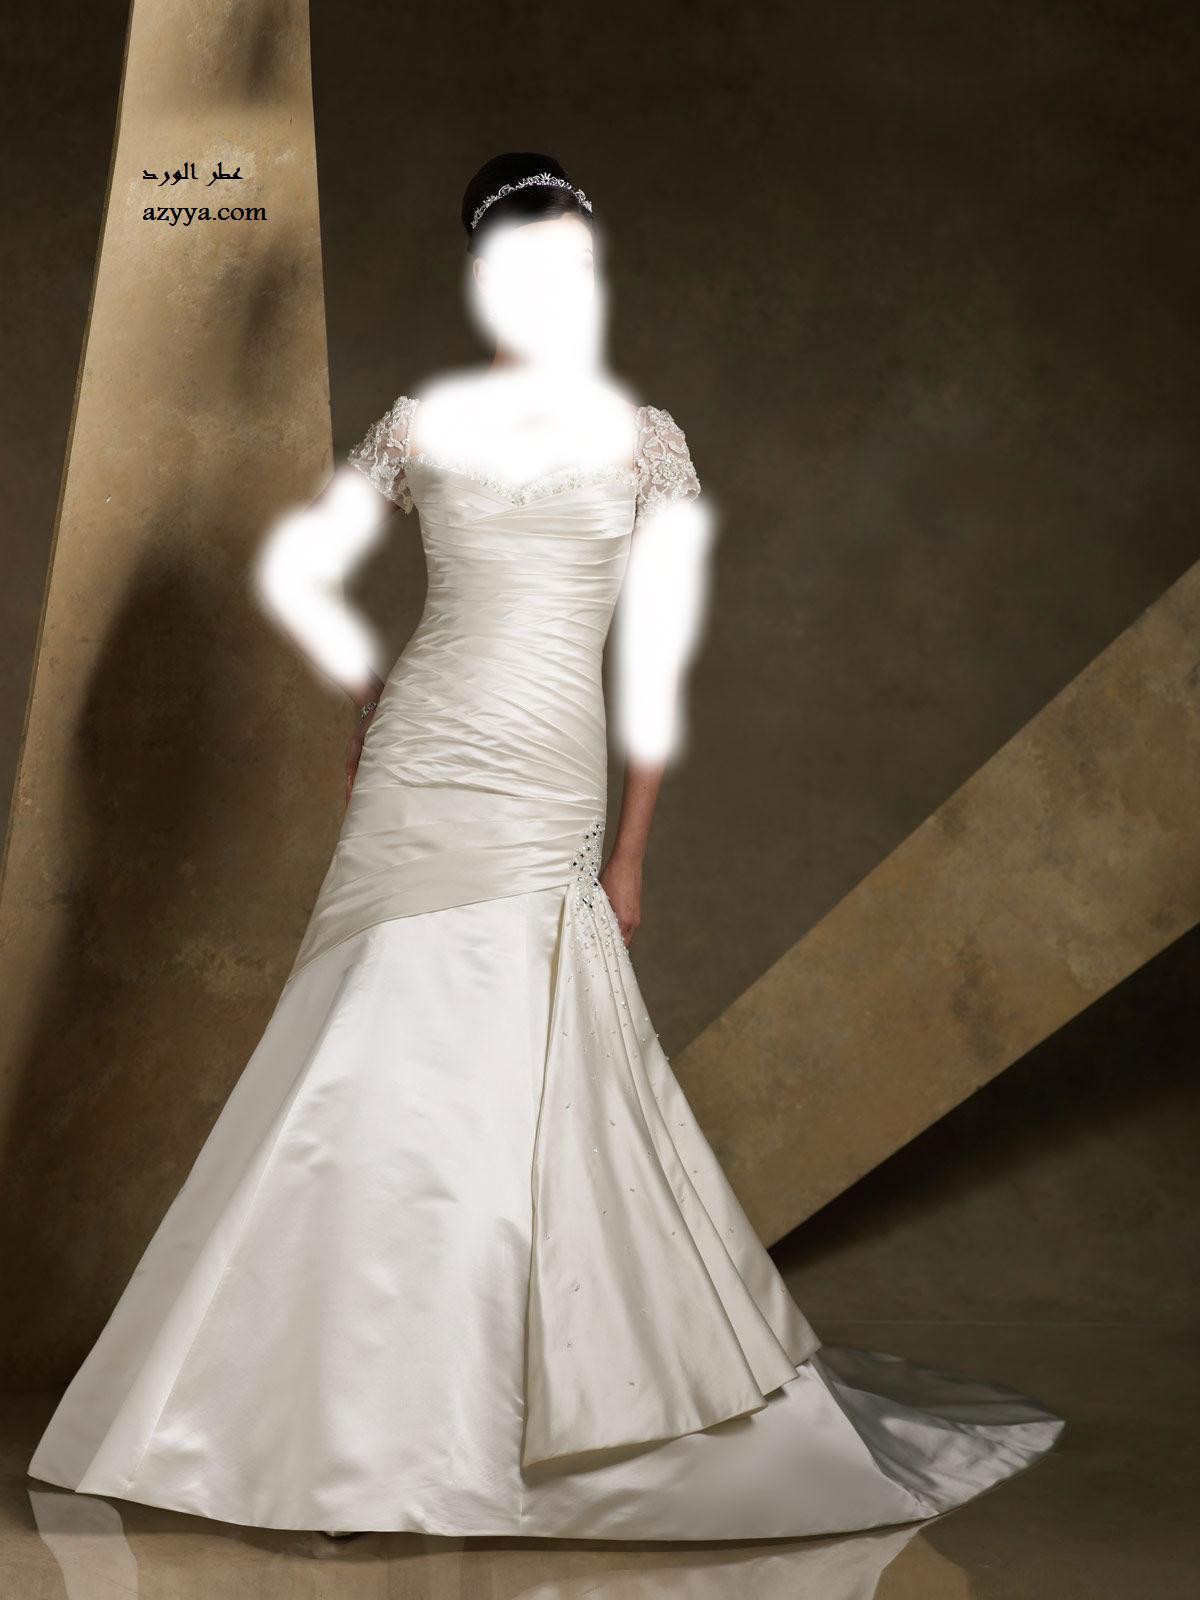  نوري عرسك ..... باجمل فستان زفاف 